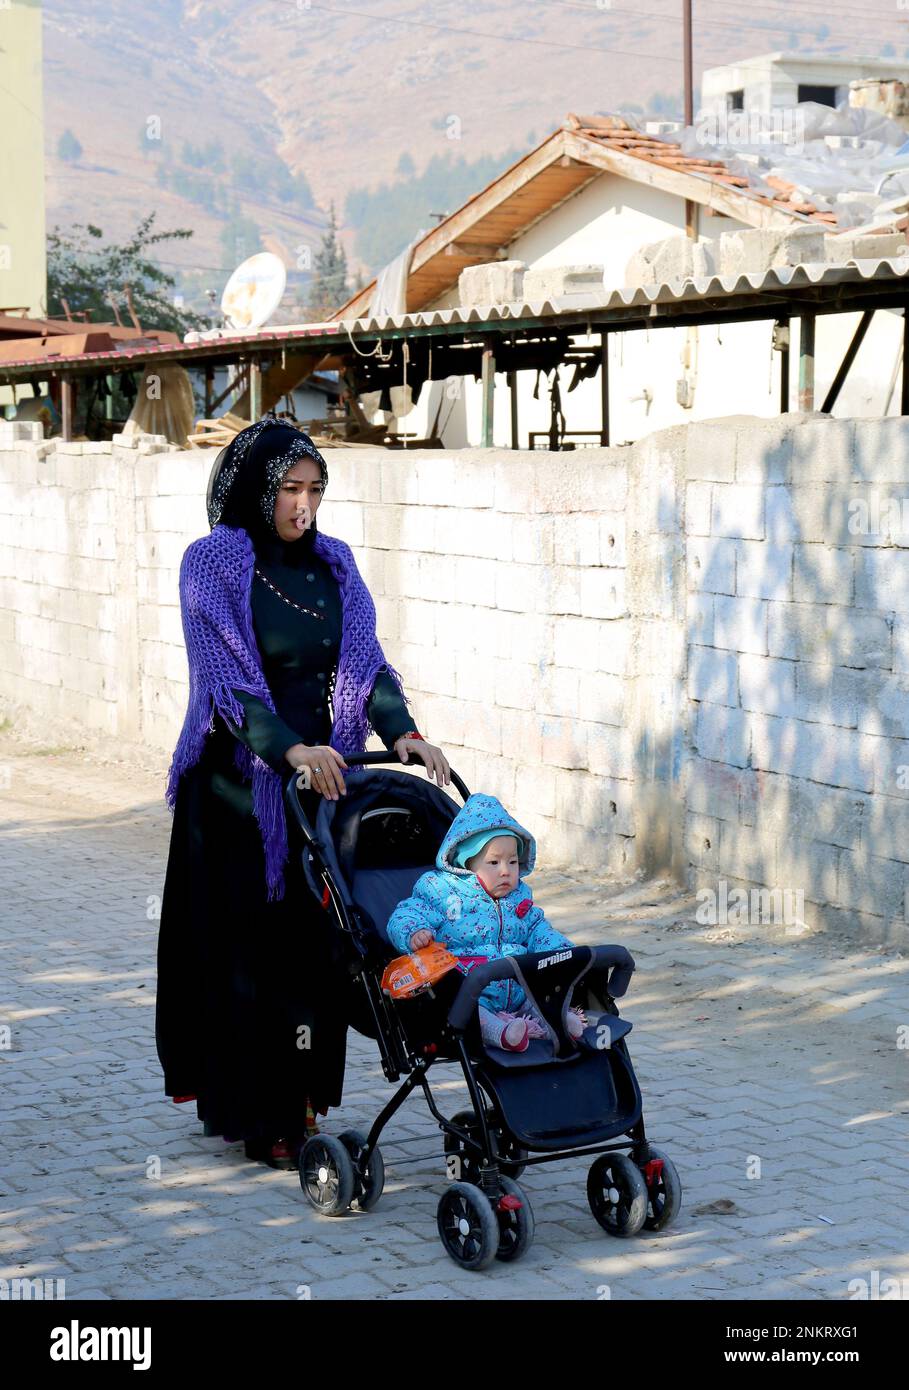 OVAKENT,HATAY,TURKEY-DECEMBER 10:Unidentified Uzbek Woman with son on Stroller walking down the street. December 10,2016 in Ovakent, Hatay, Turkey Stock Photo